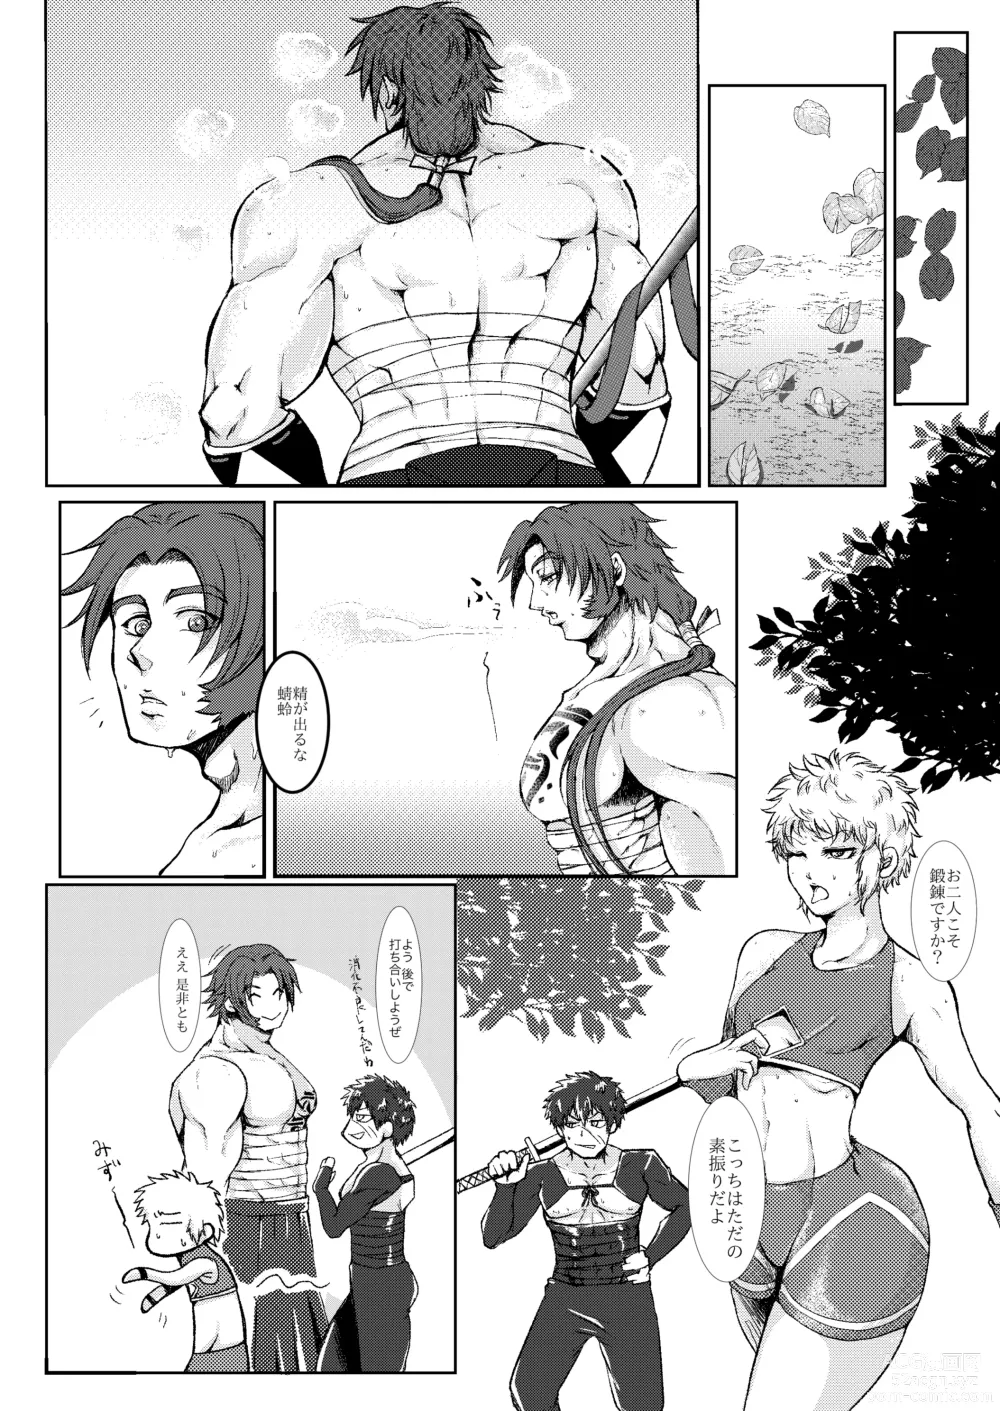 Page 6 of doujinshi Hitori Esu Chino Yari Kata